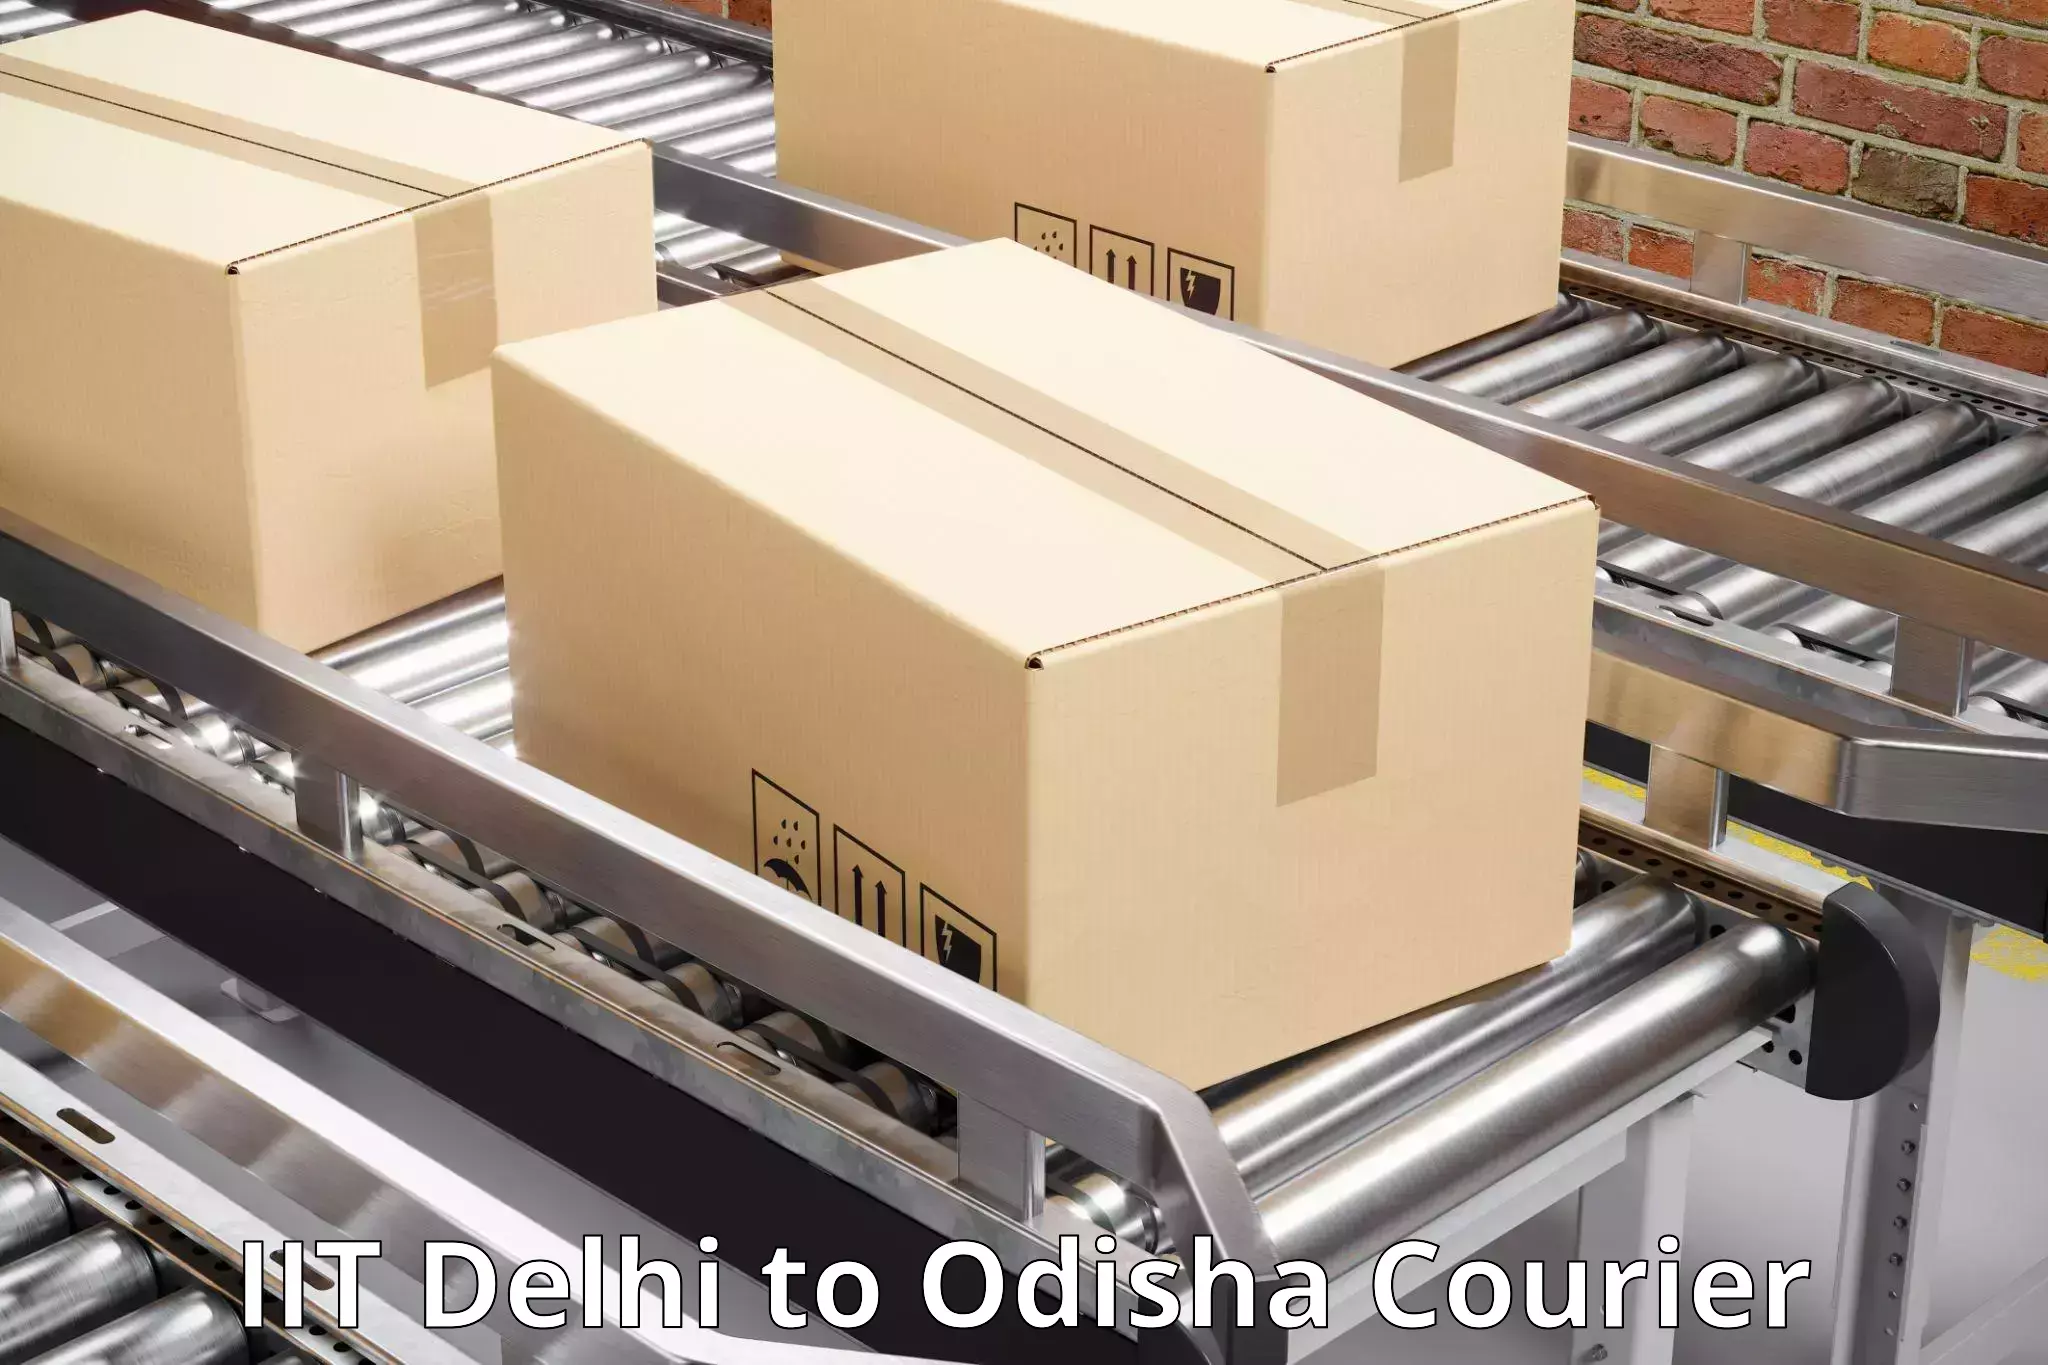 Speedy delivery service IIT Delhi to Sonapur